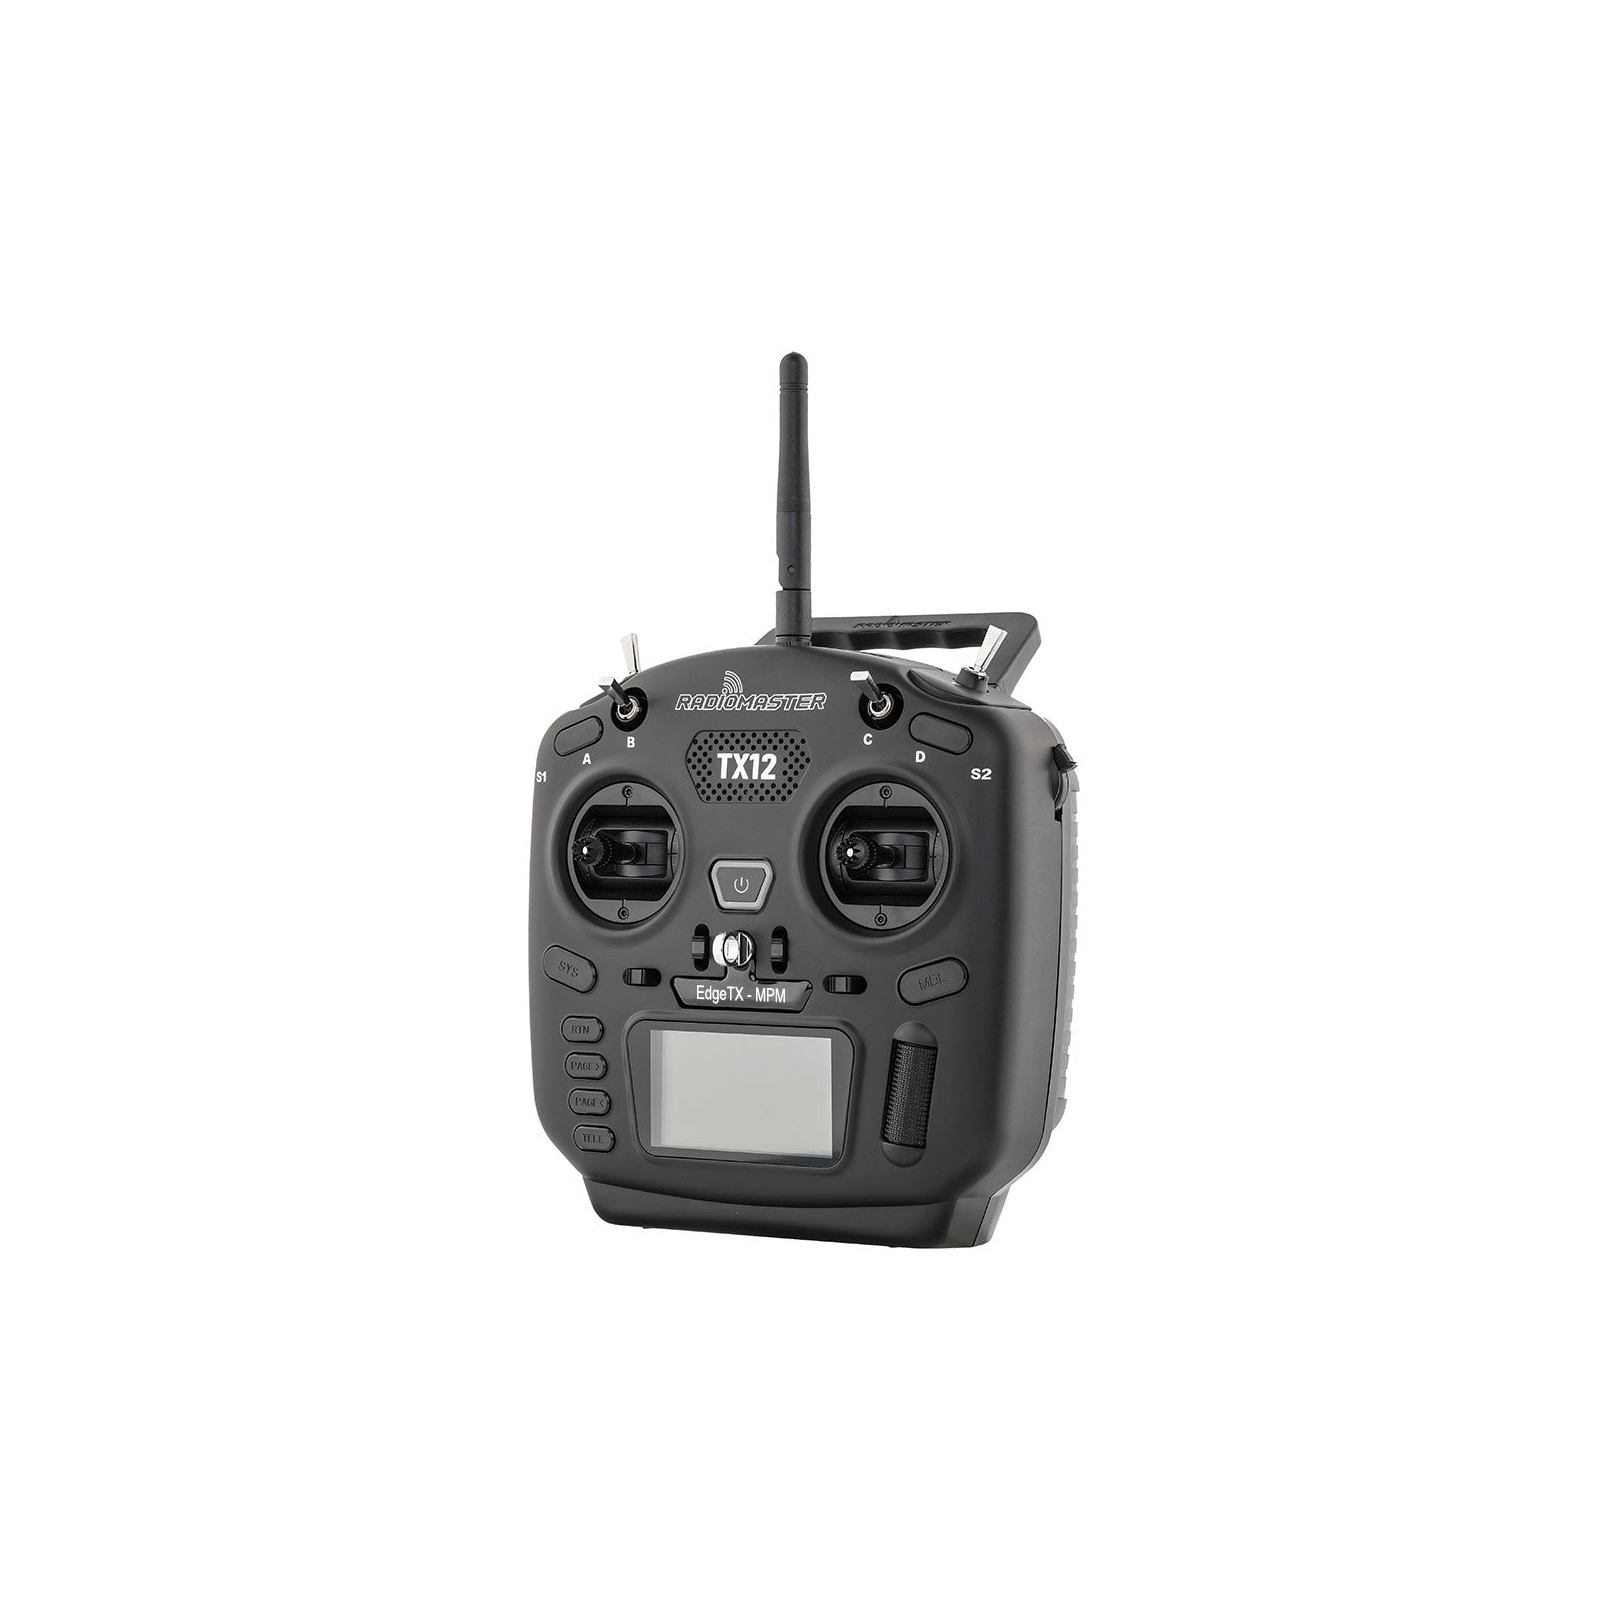 Пульт управління для дрона RadioMaster TX12 MKII ExpressLRS Edge TX (HP0157.0032-M2) зображення 2